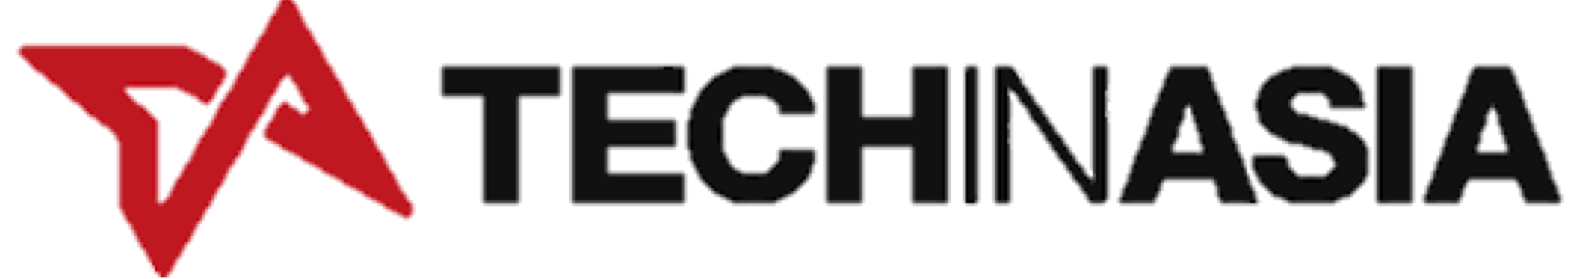 tech in asia logo